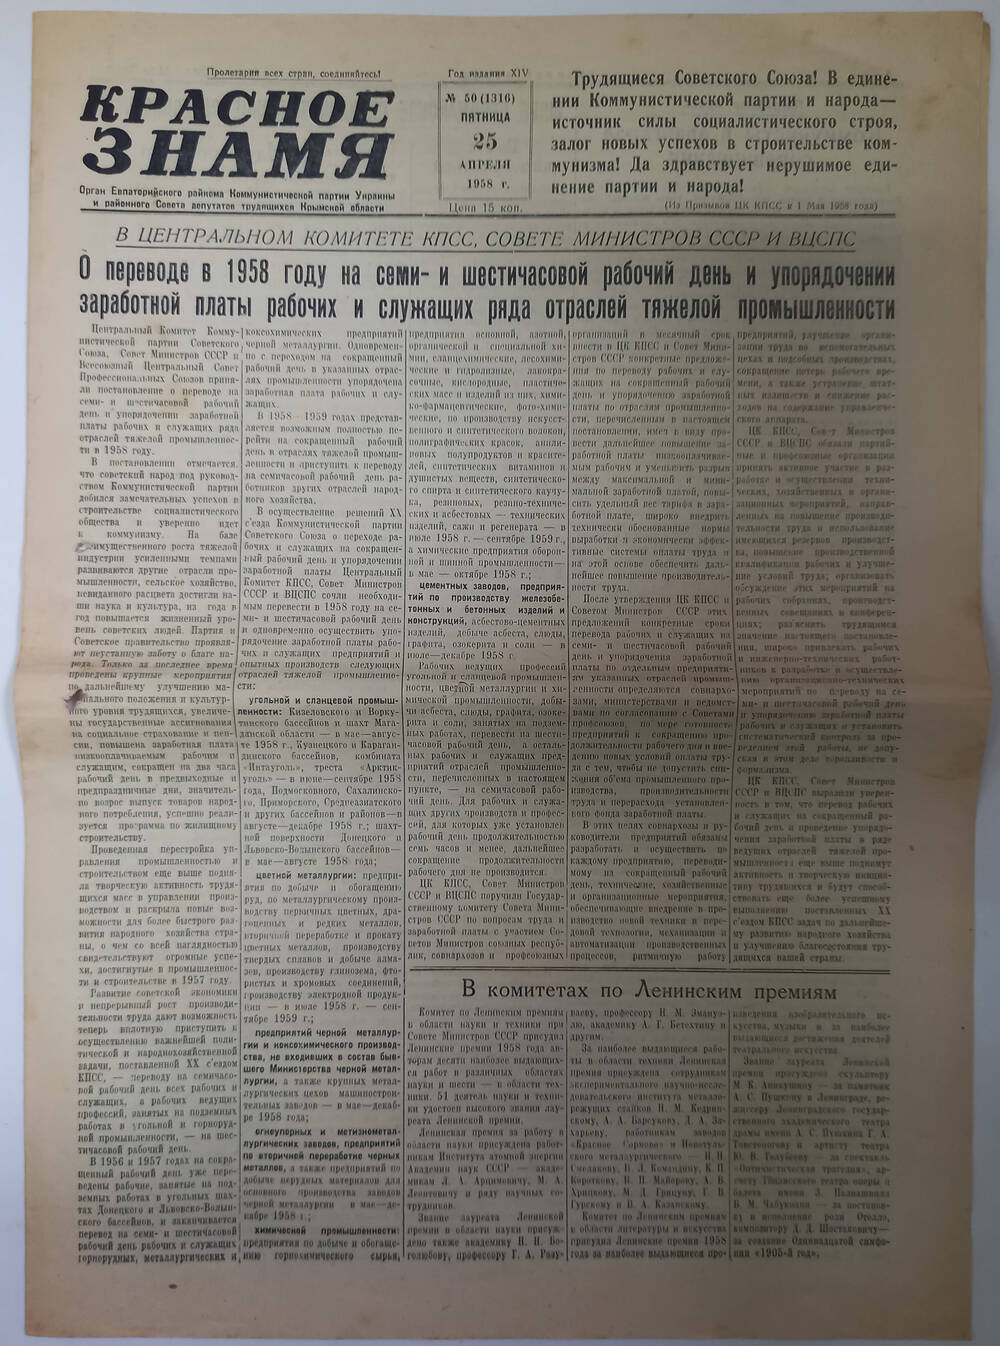 Газета Красное знамя №50(1316) от 25.04.1958 г.